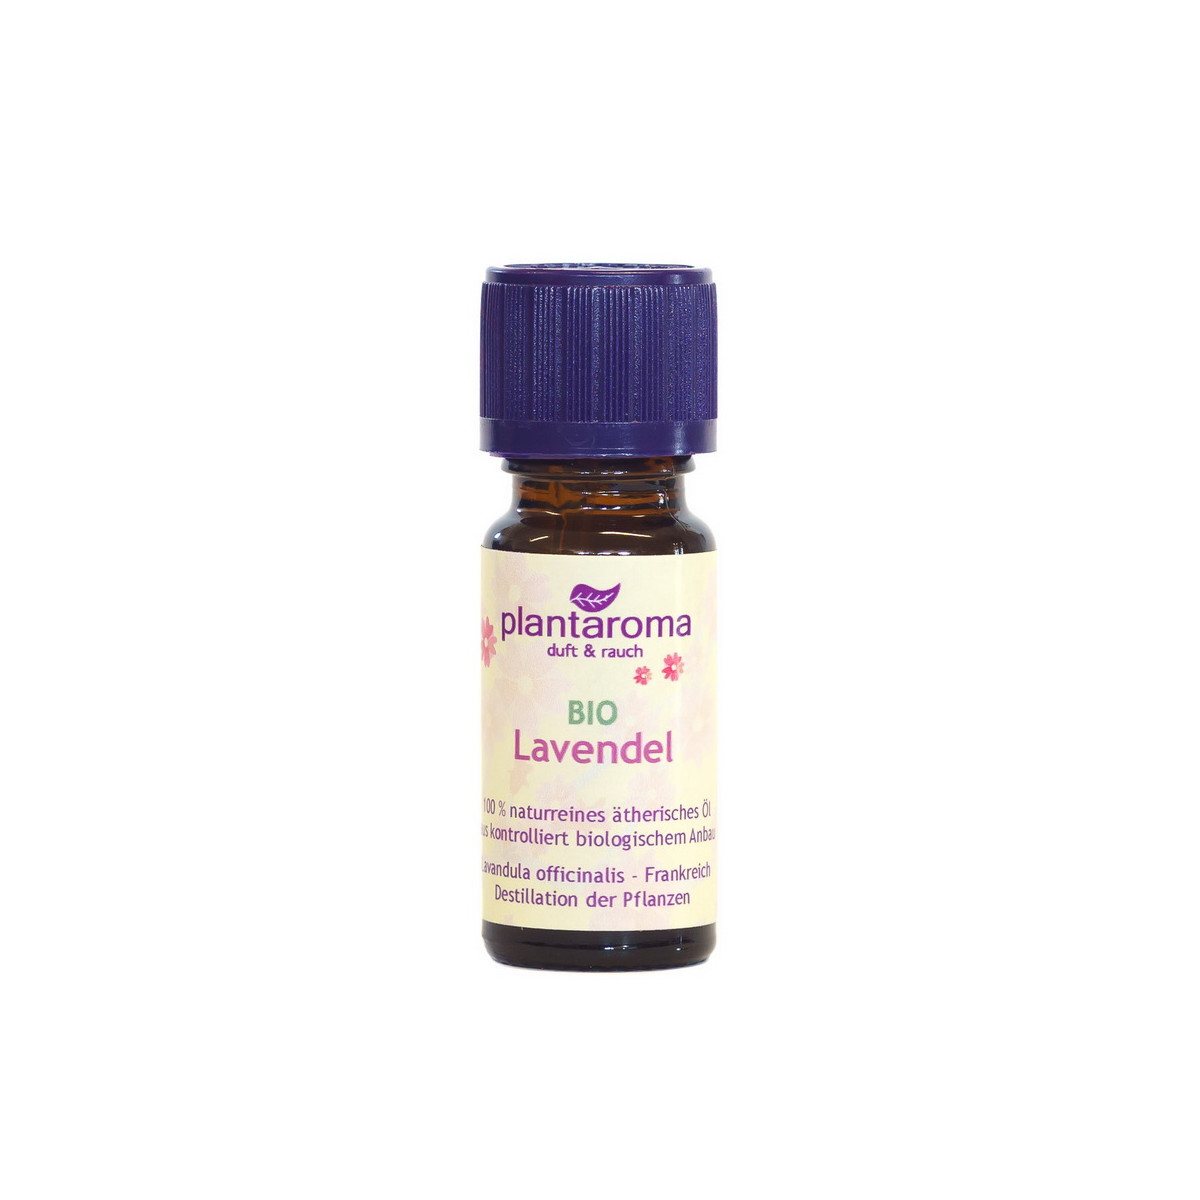 Lavendel - Bio - Plantaroma ätherisches Duftöl